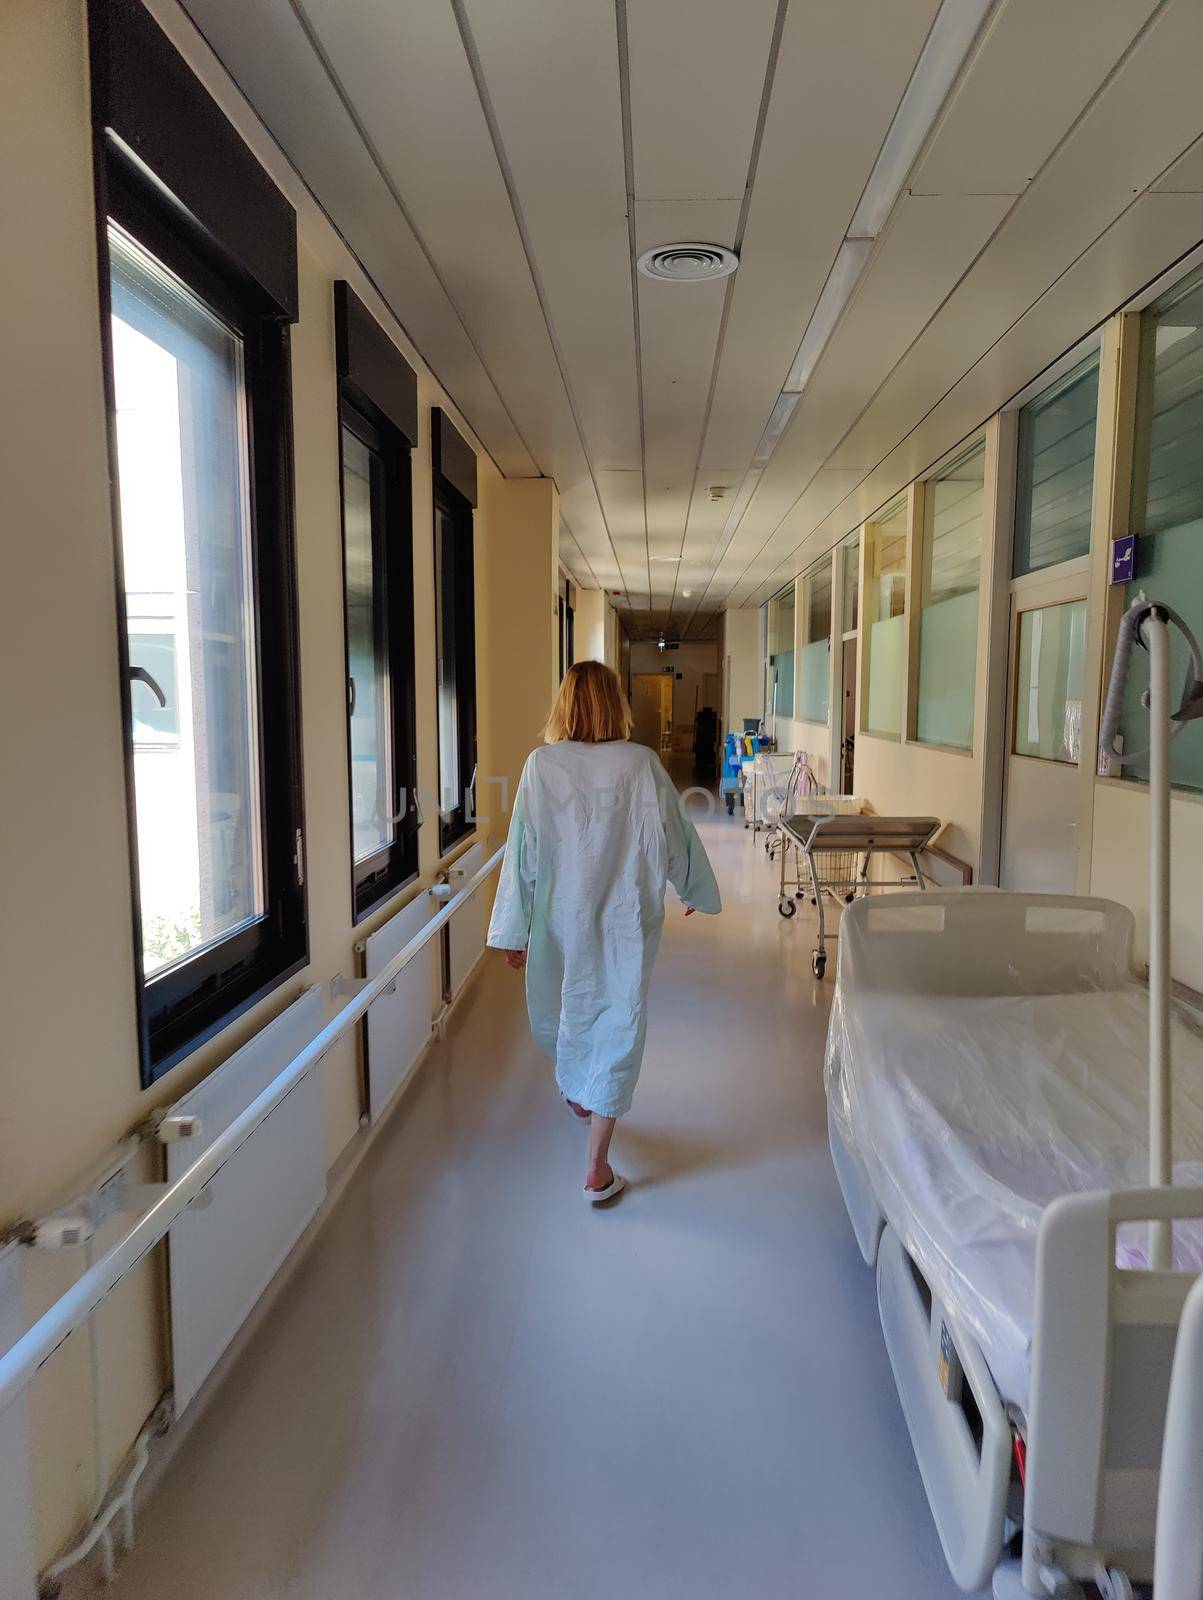 Female patient wearing hospital robe walking in long empty hospital hallway